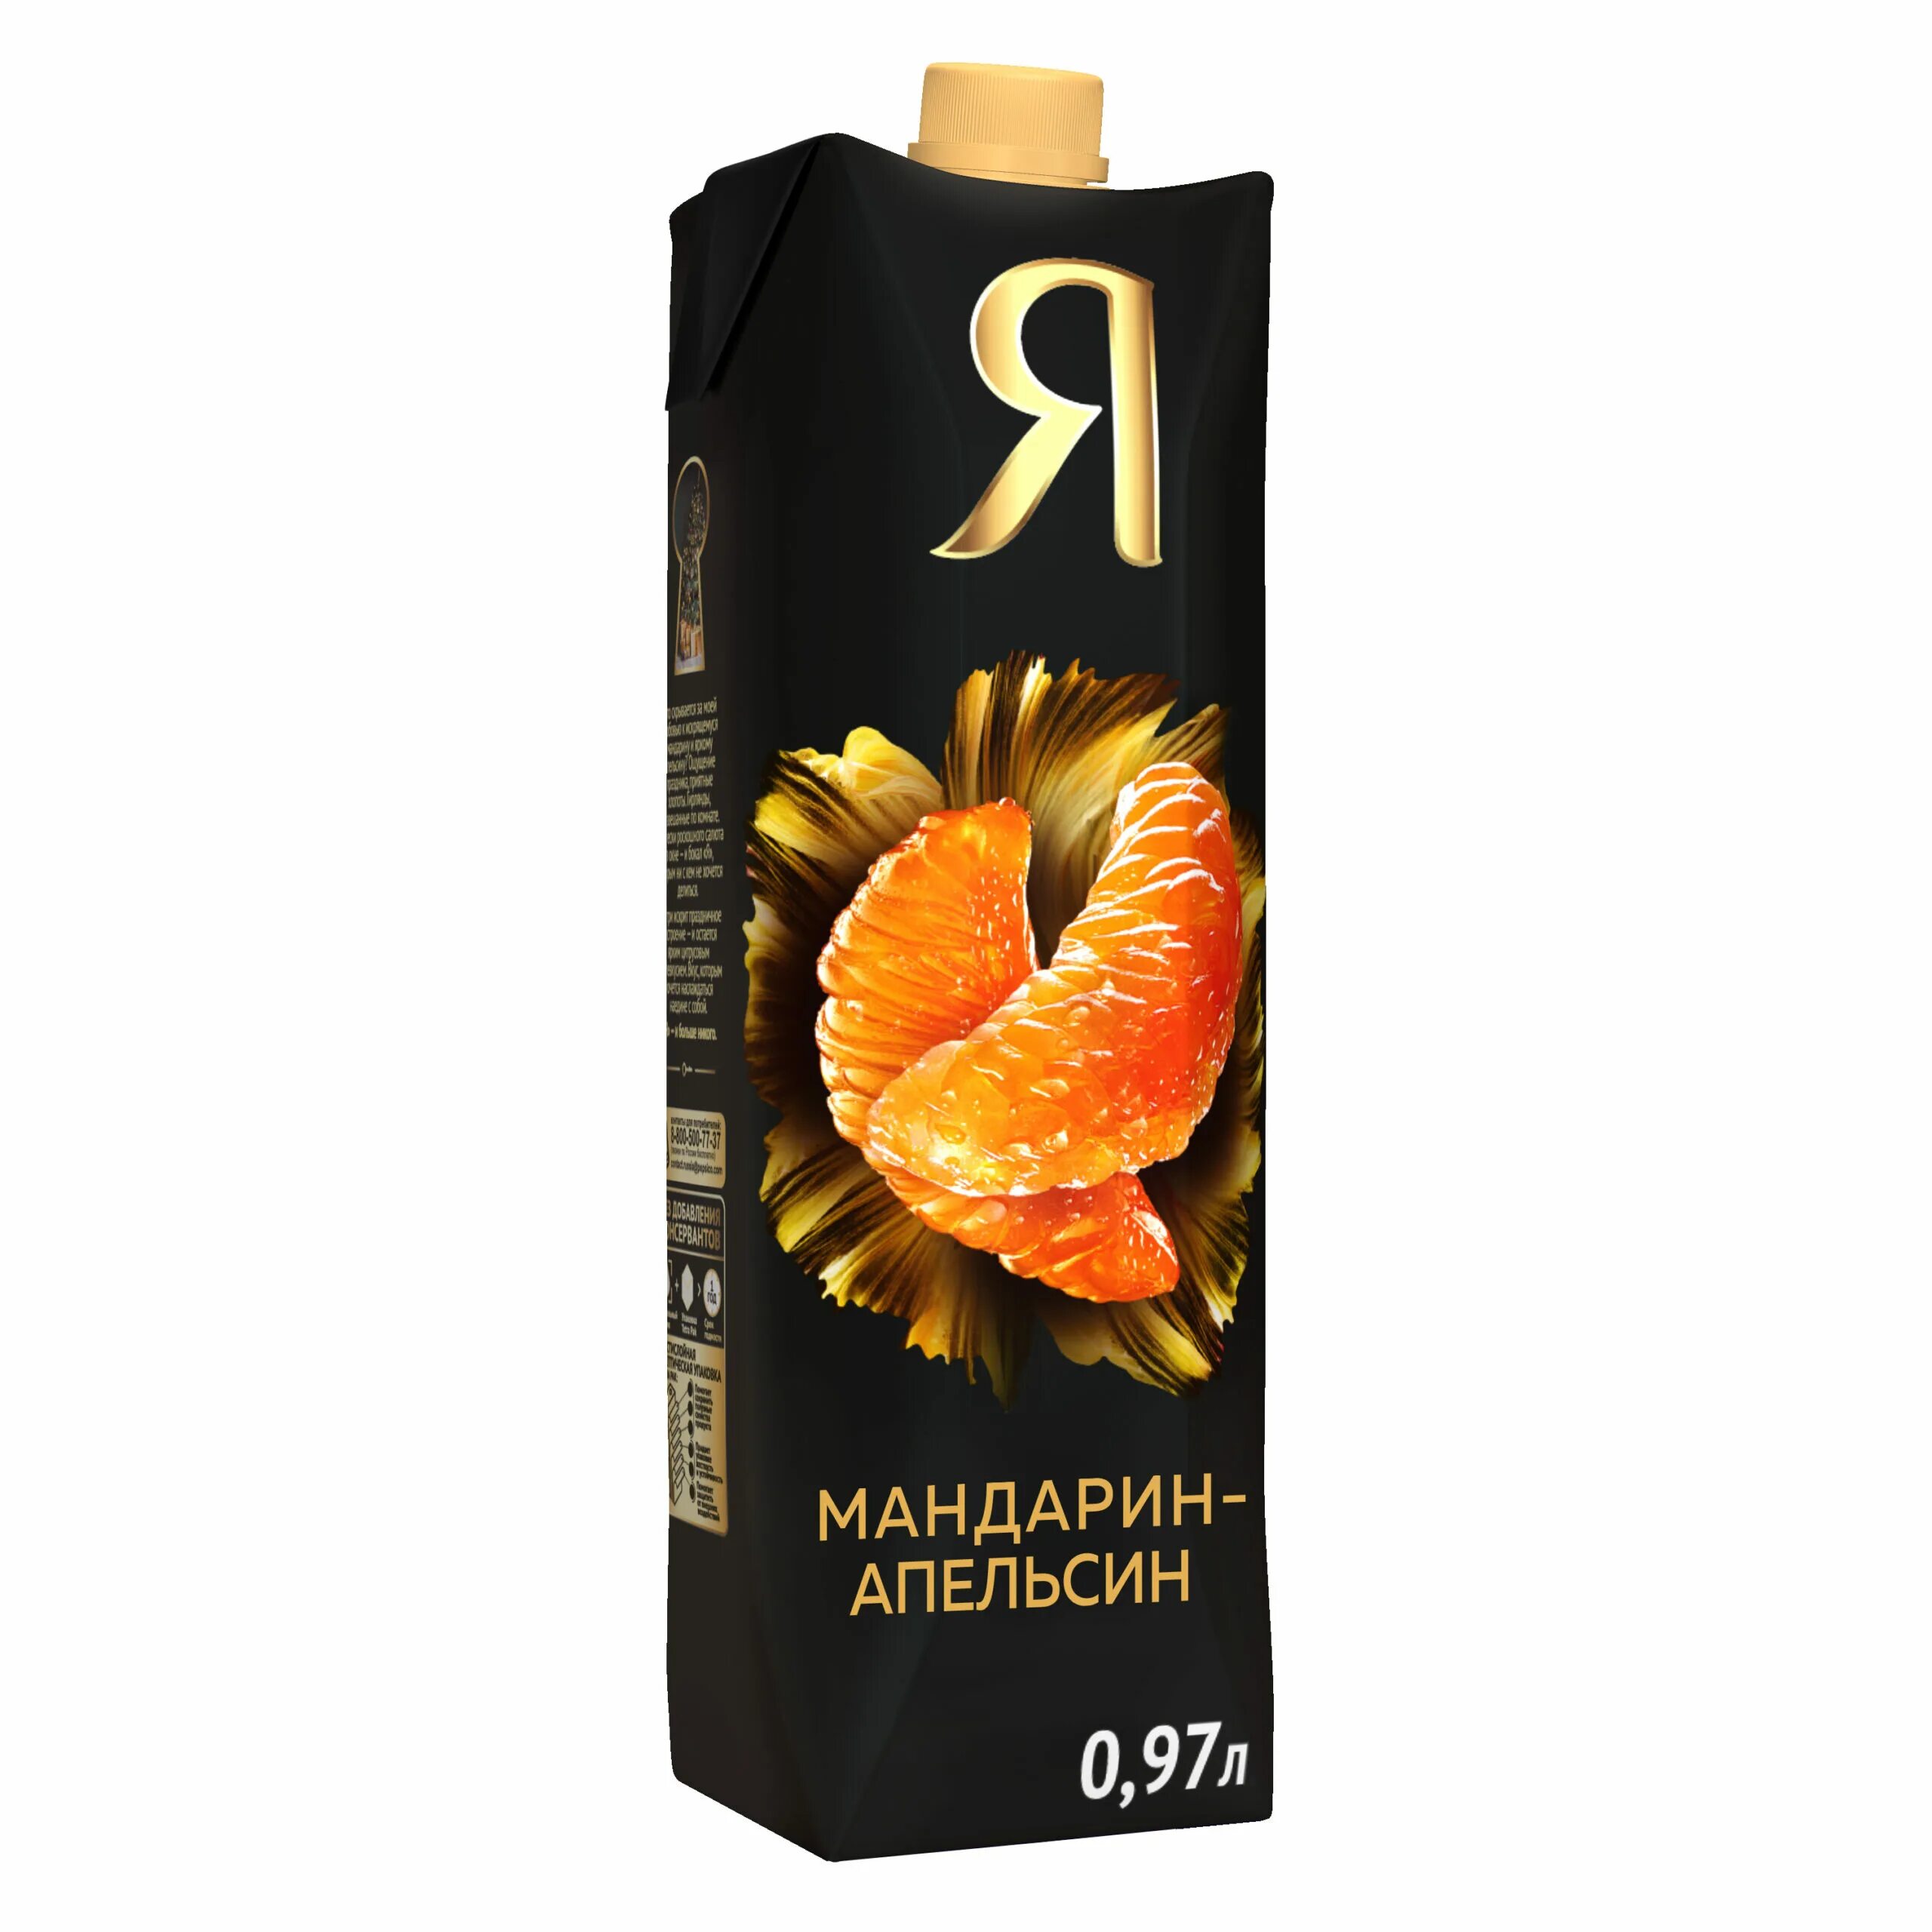 Я нектар мандарин 0.97. Сок я ананас с мякотью 1 л.. Сок я мандарин апельсин. Сок я апельсиновый с мякотью 0.97л. Мандаринов сок купить